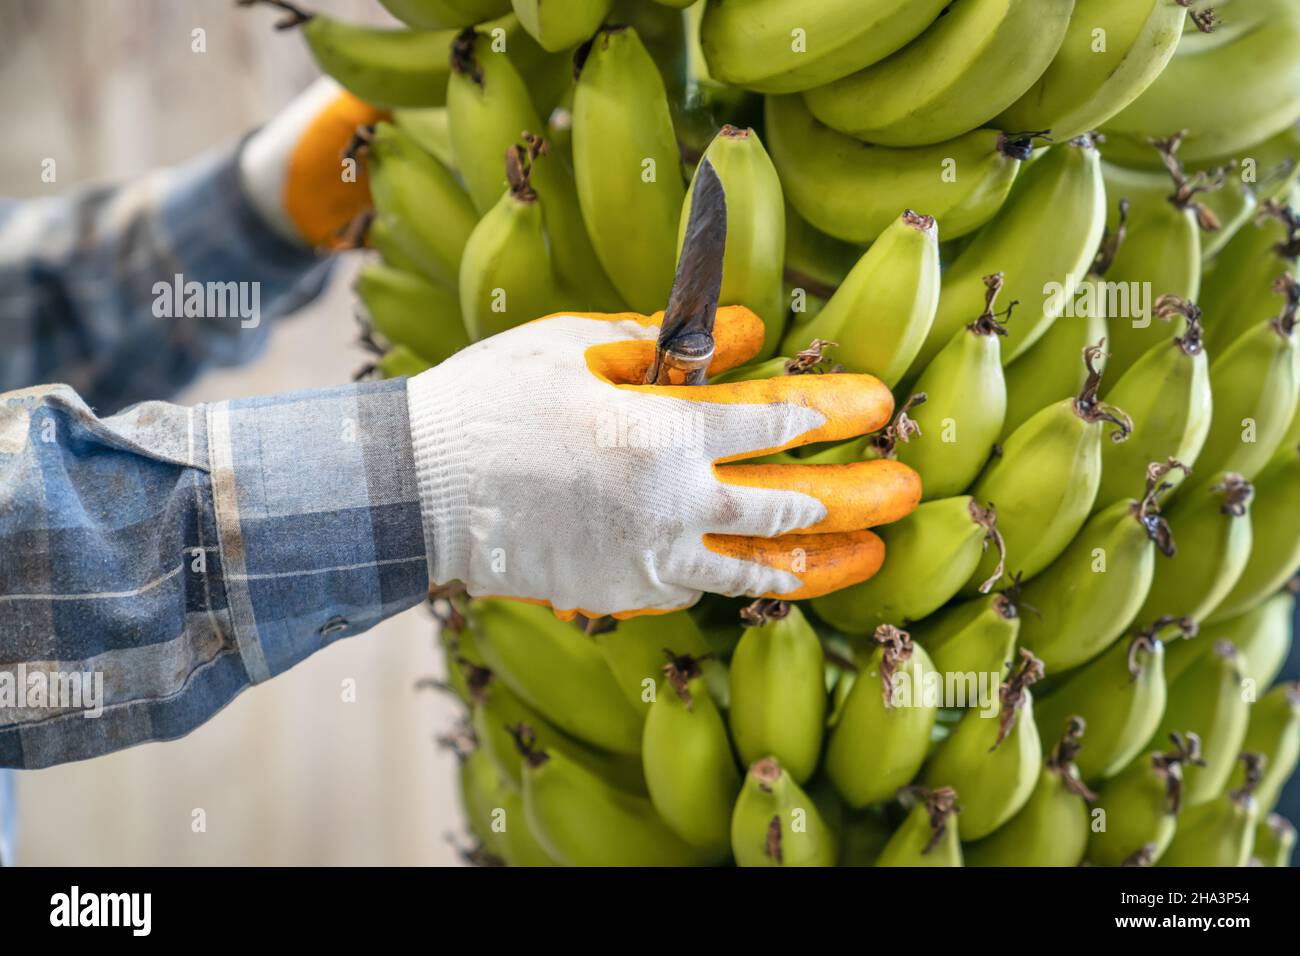 Industrie de la banane.Grand bouquet de bananes mûres vertes entre les mains des hommes.Préparation de bananes pour la vente en gros.Vue latérale. Banque D'Images